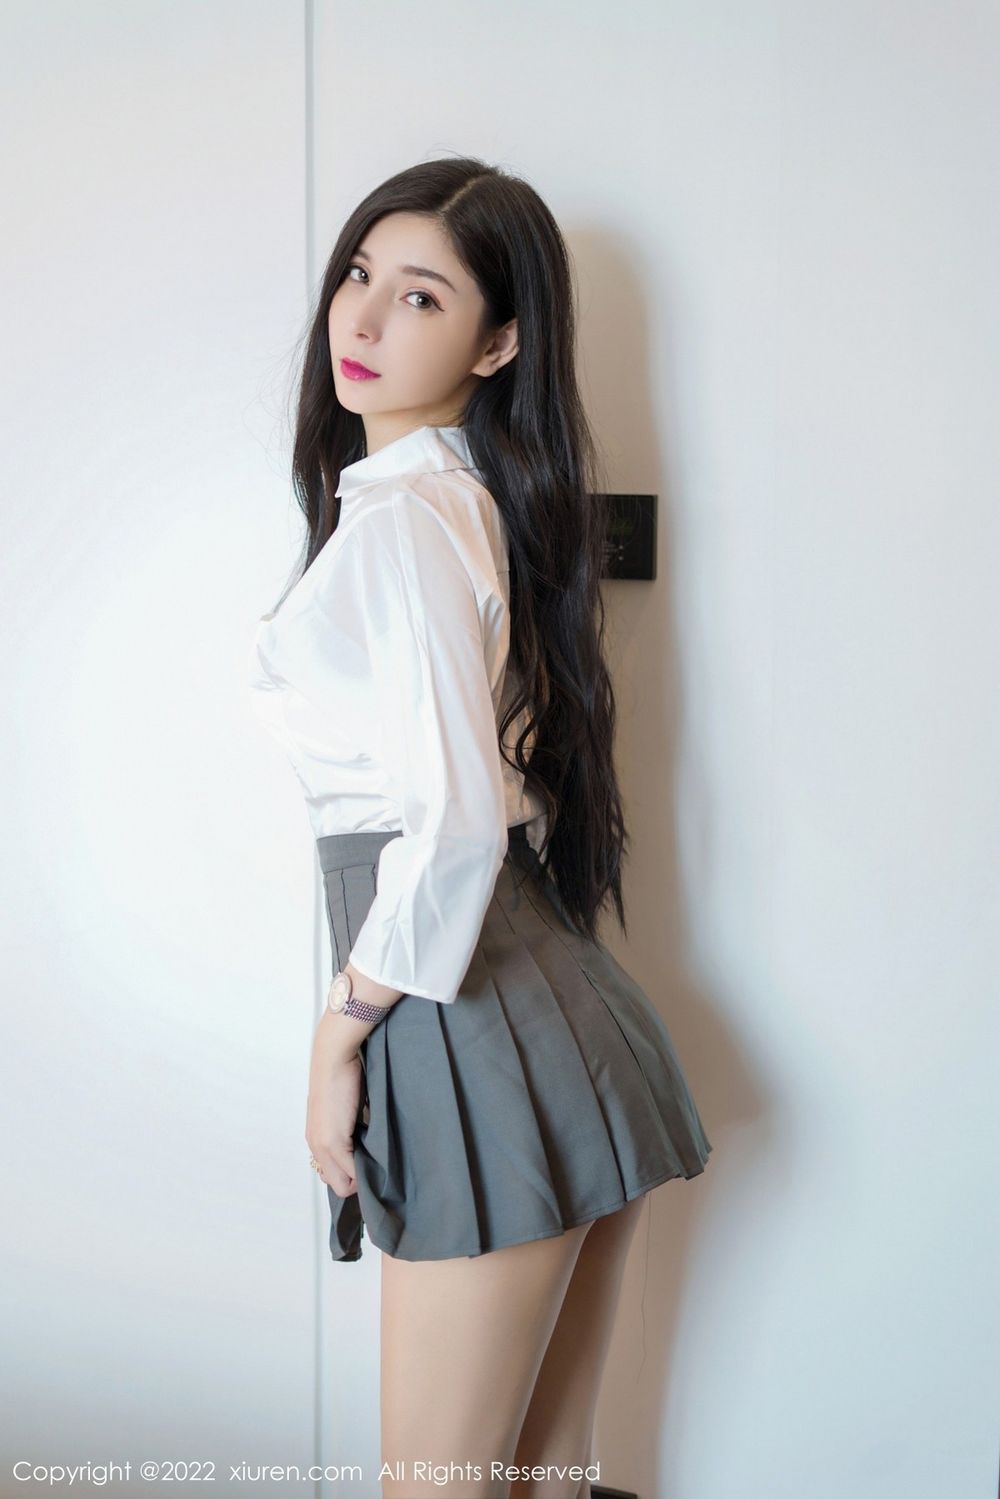 美女模特小蛮妖x白T服饰搭配灰色短裙系列性感写真